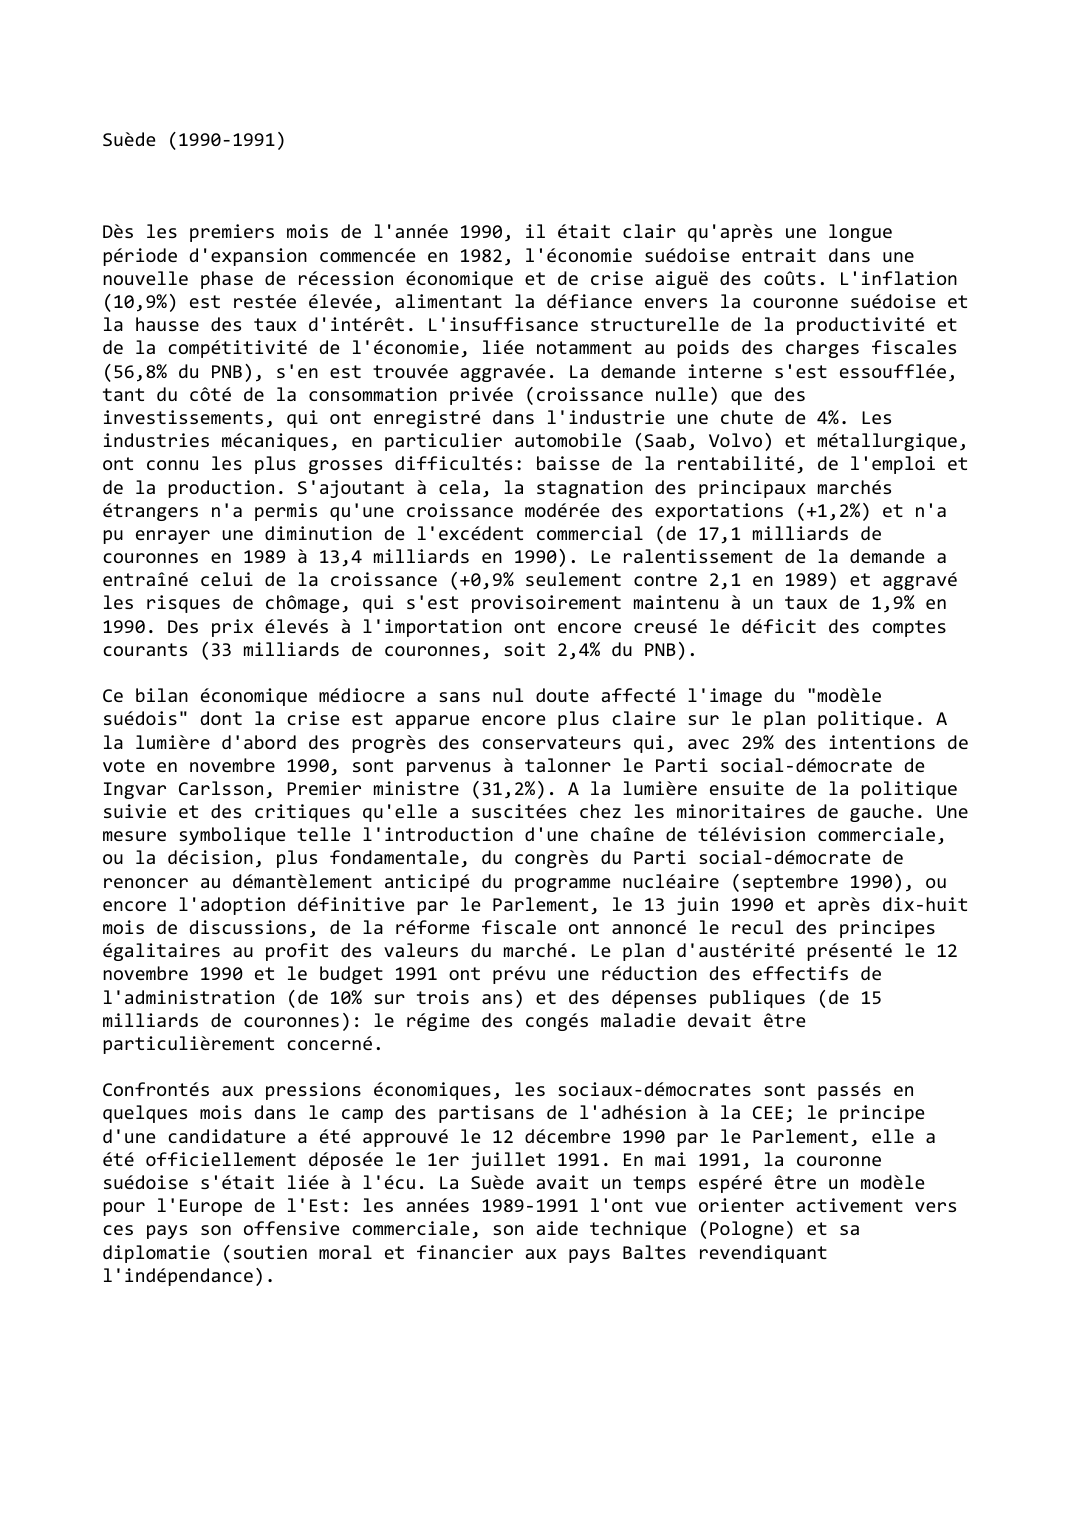 Prévisualisation du document Suède (1990-1991)